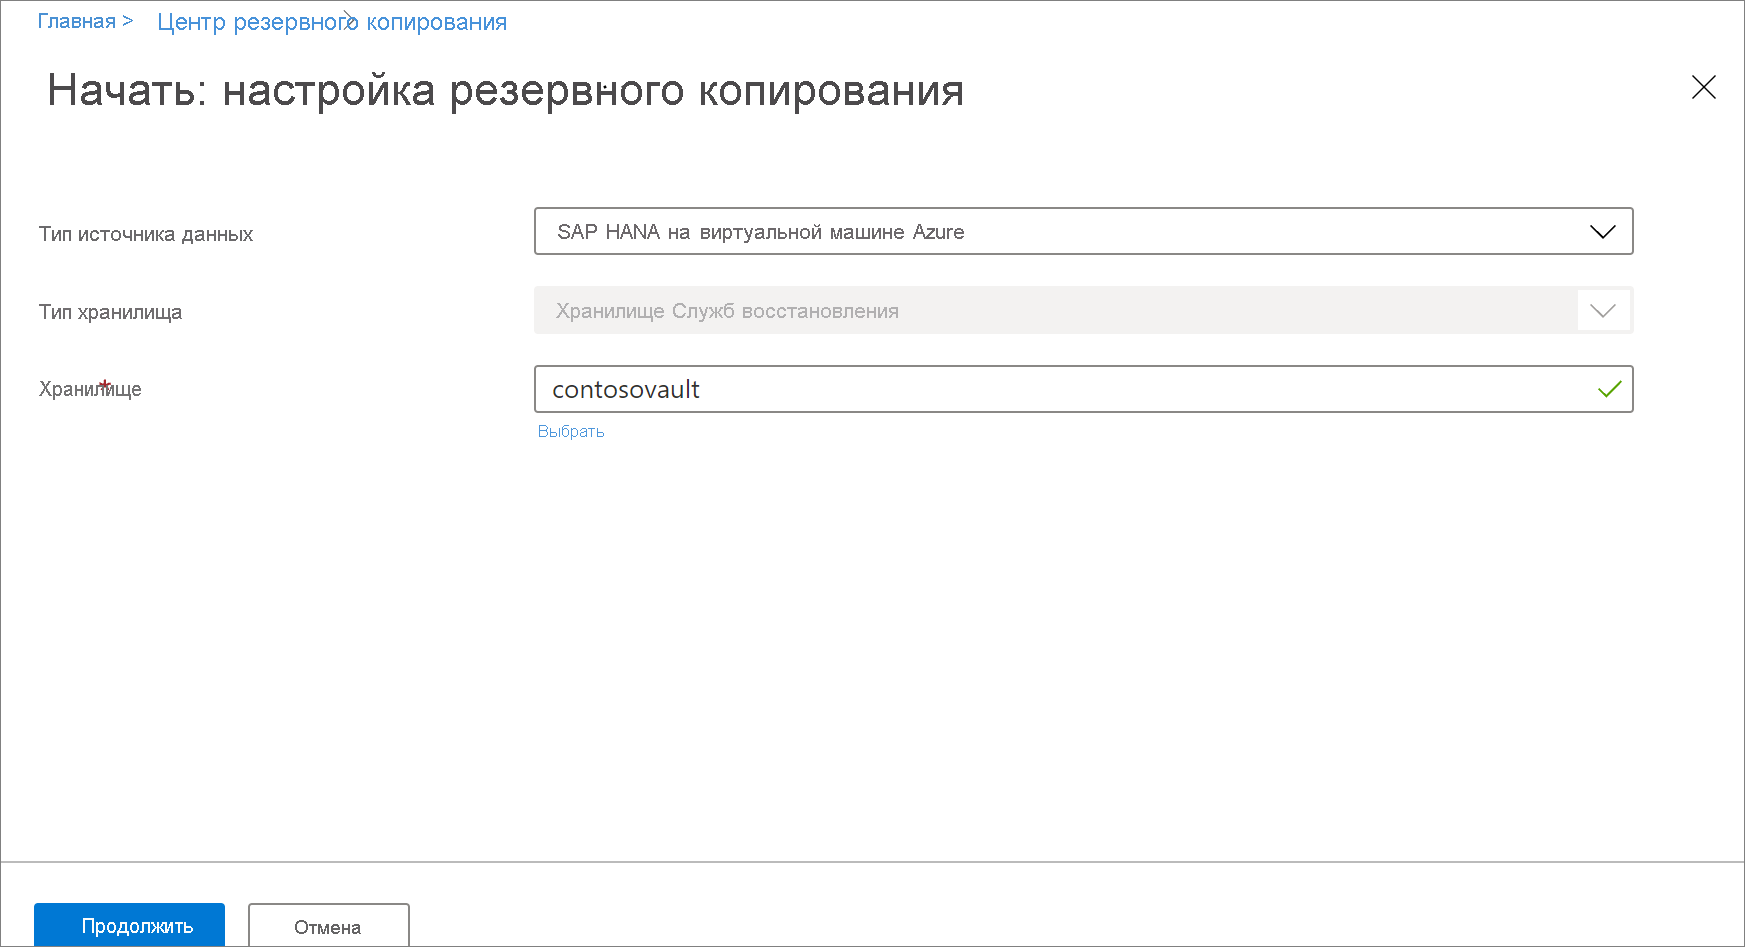 Снимок экрана: выбор базы данных SAP HANA на виртуальной машине Azure.